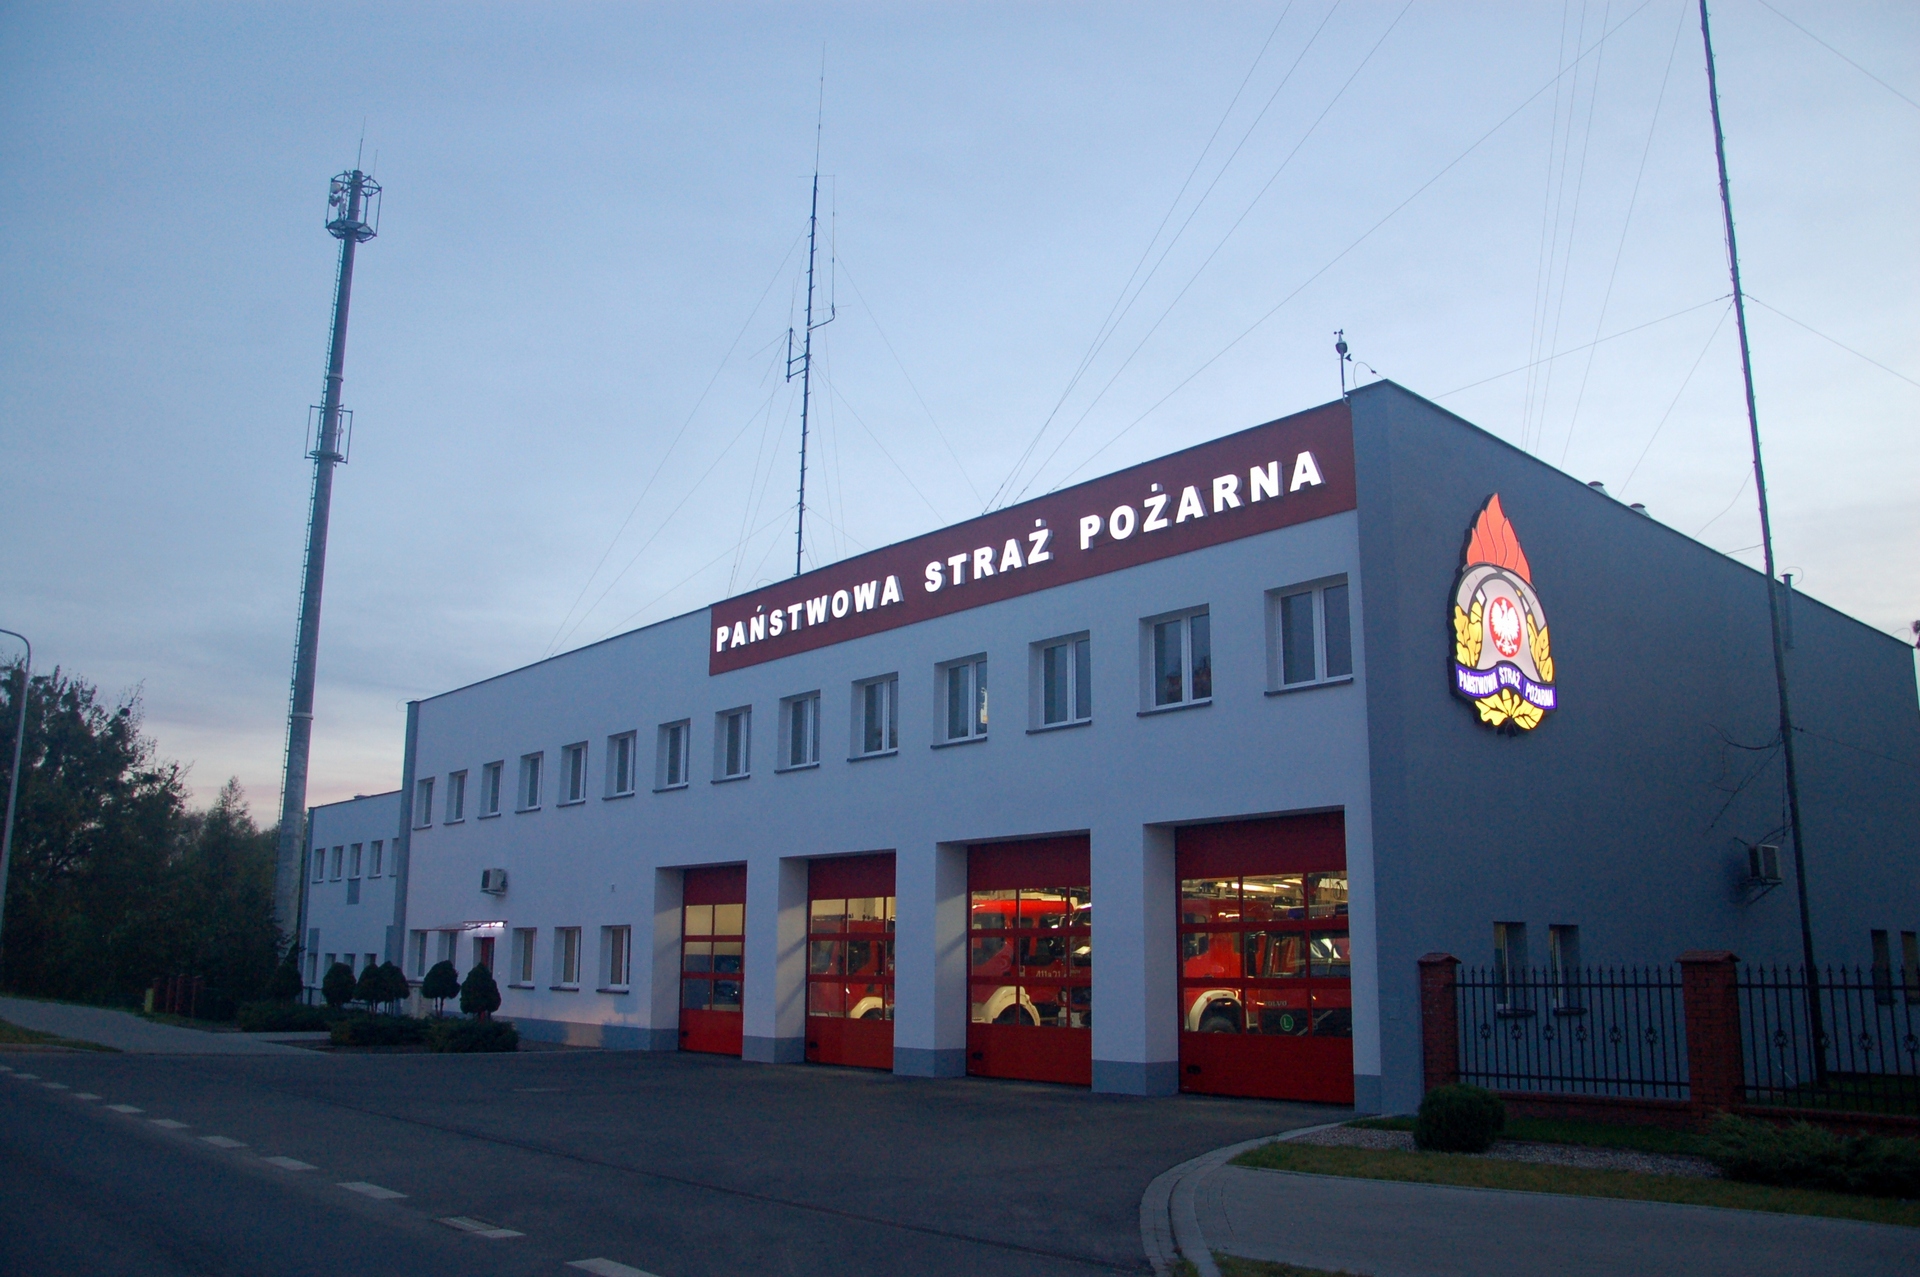 Zdjęcie przedstawia budynek Komendy Powiatowej PSP w Brodnicy od strony ulicy Sienkiewicza o zmierzchu. Na budynku podświetlony napis Państwowa Straż Pożarna oraz logo PSP. W przeszklonych wrotach garażowych widoczny oświetlone pojazdy Jednostki Ratowniczo-Gaśniczej.
